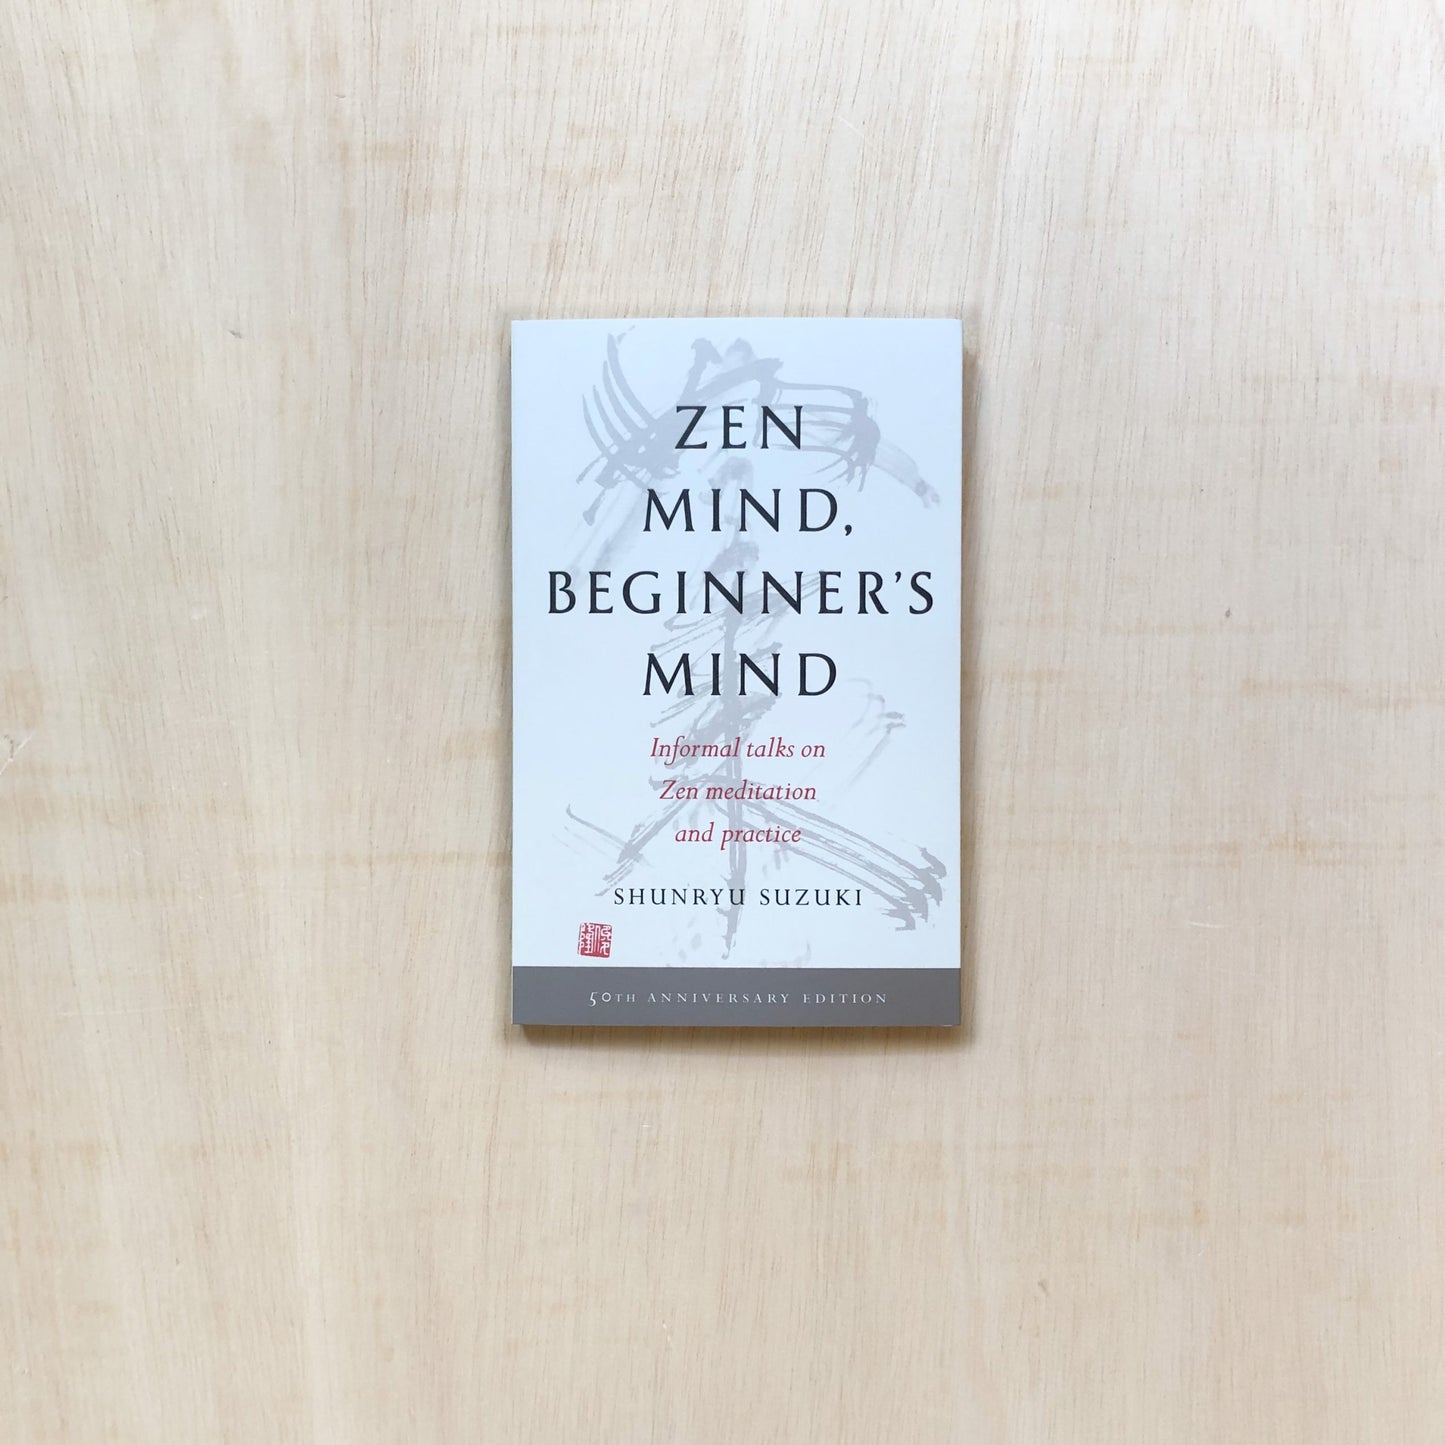 Zen Mind, Beginner's Mind (50th anniversary edition)